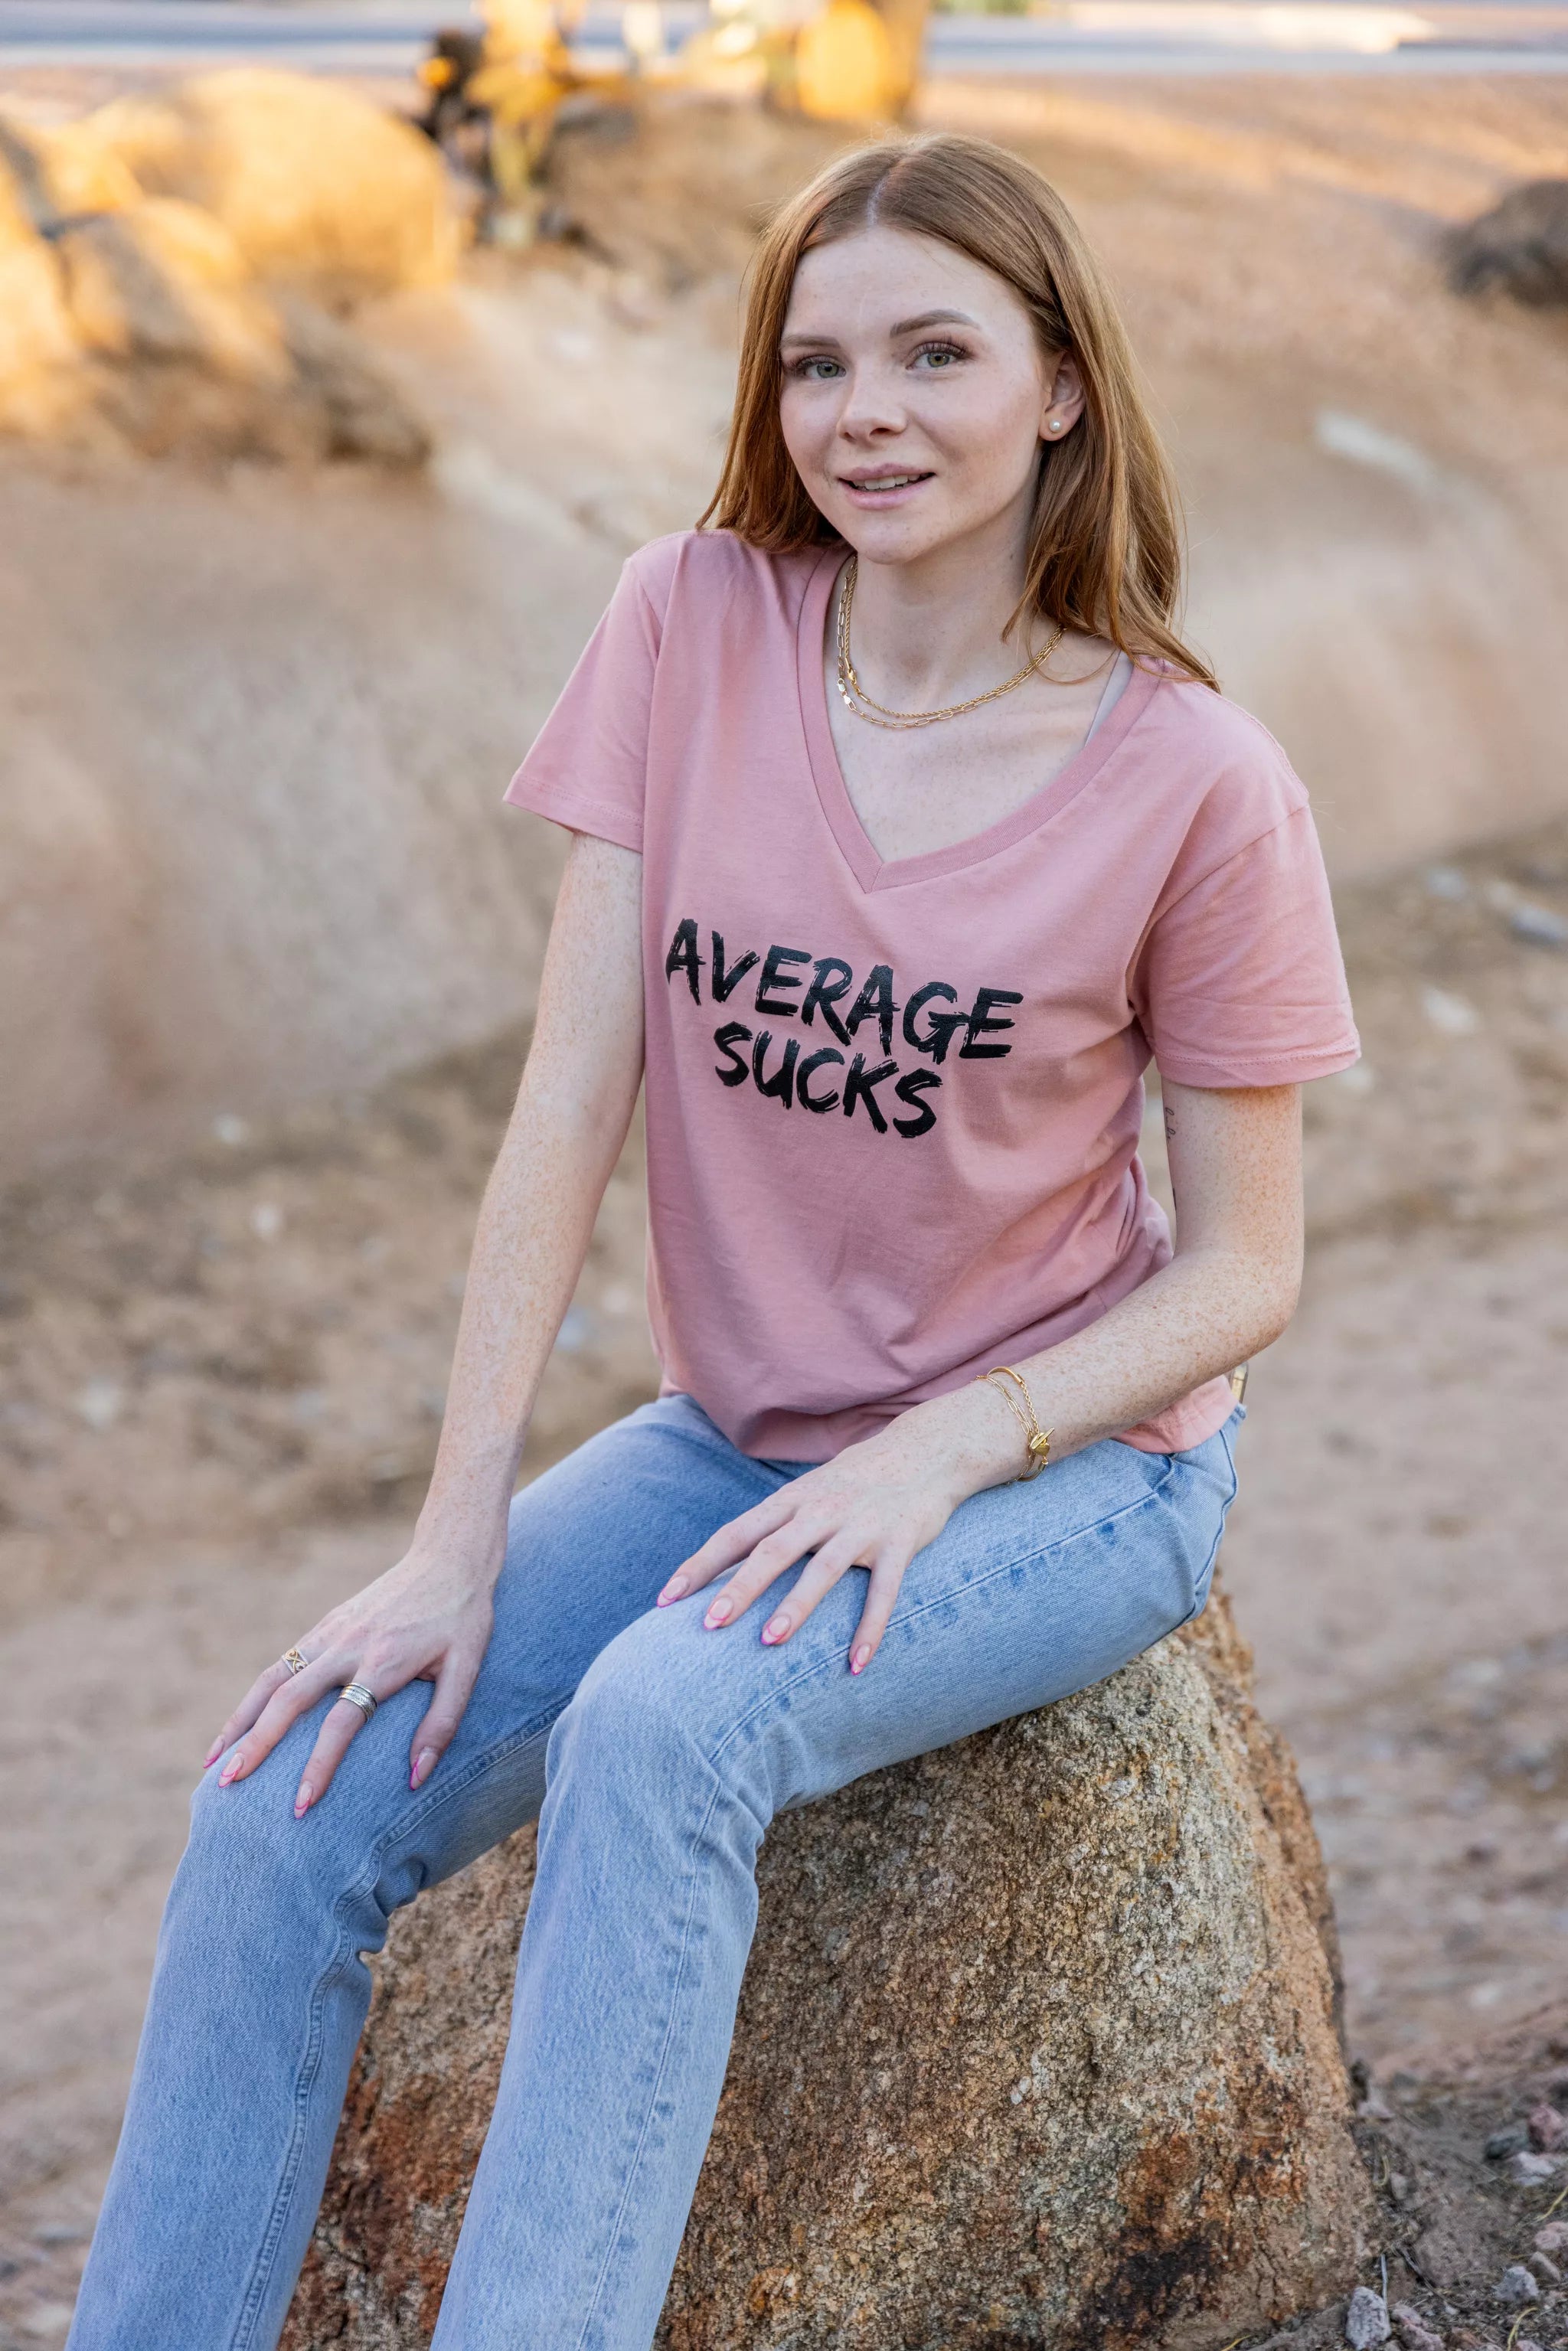 Average Sucks Women's V-Neck T-Shirt